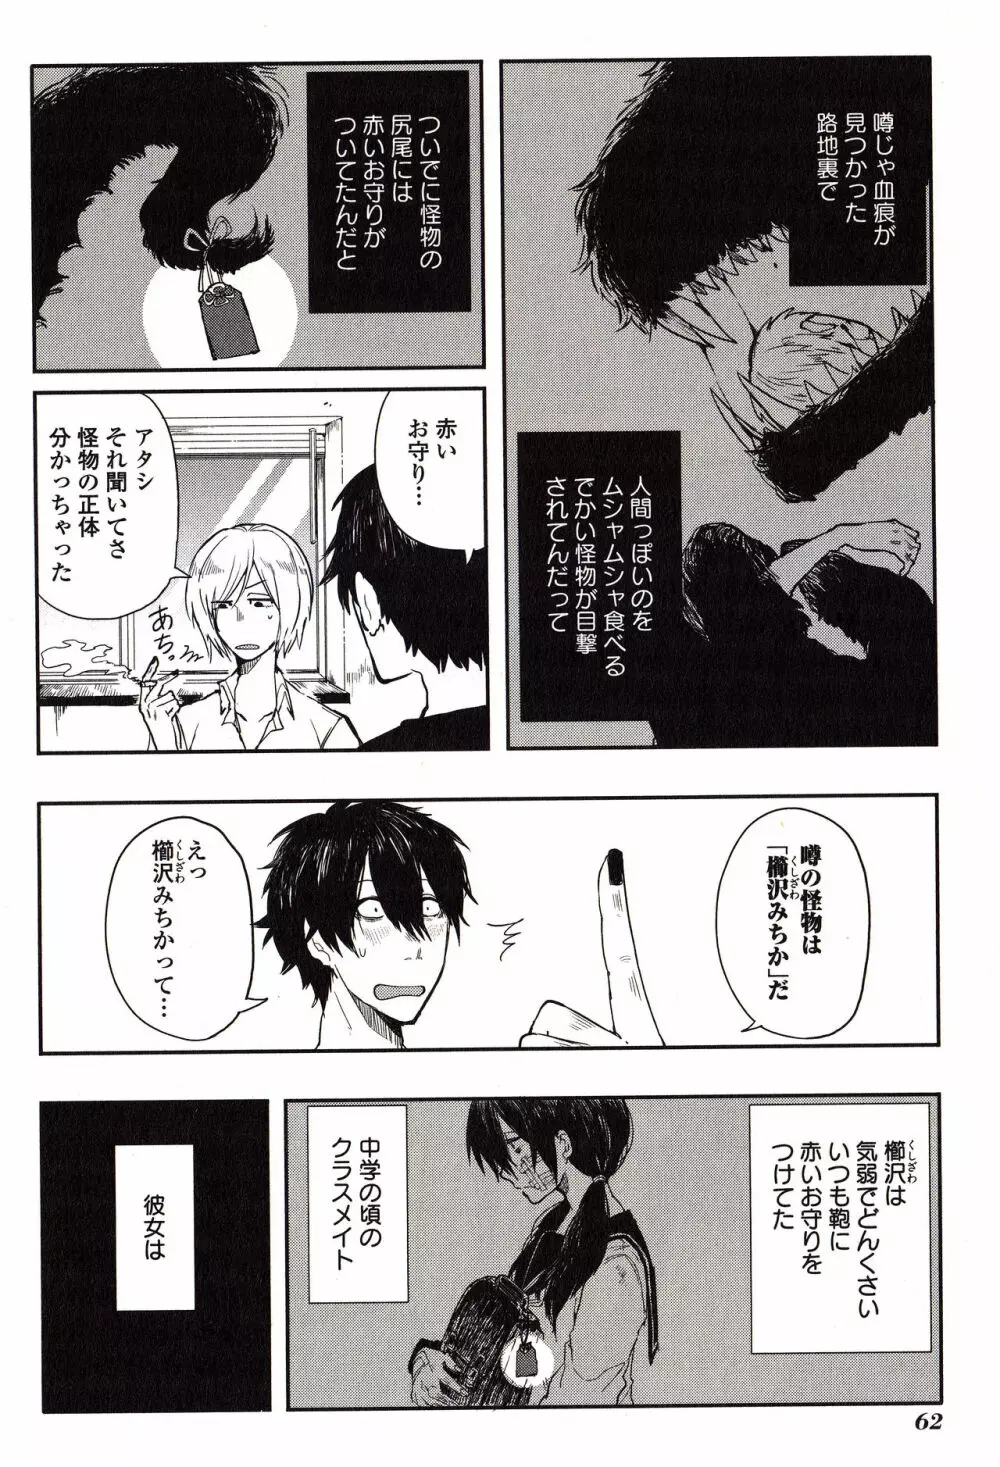 Sanzo manga 62ページ